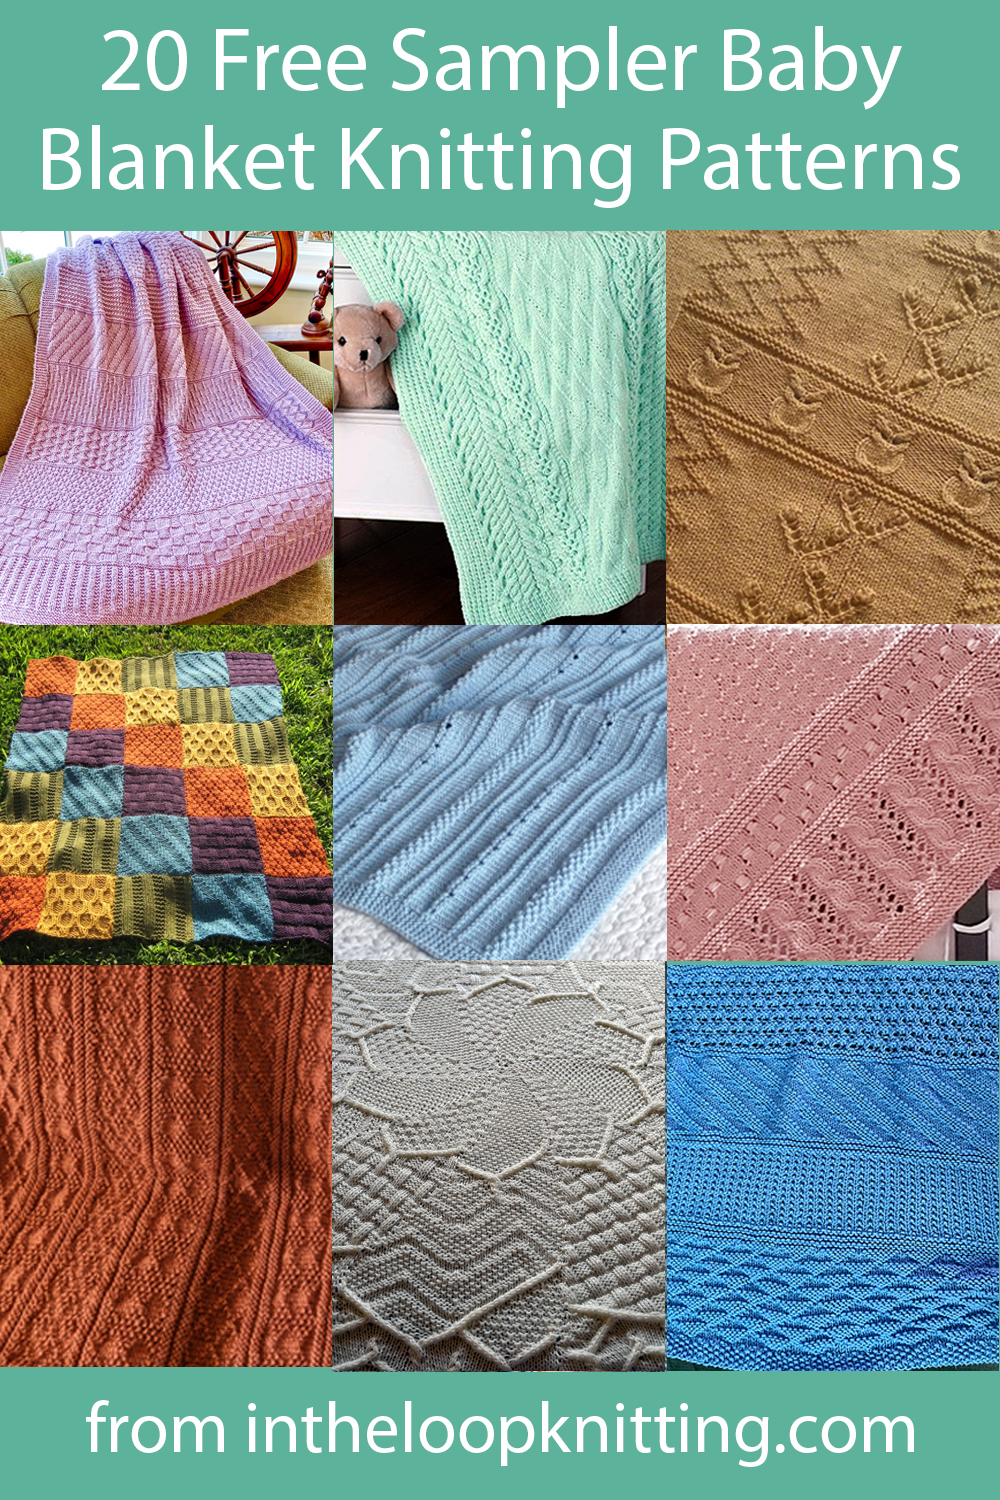 Sampler Baby Blanket Knitting Patterns